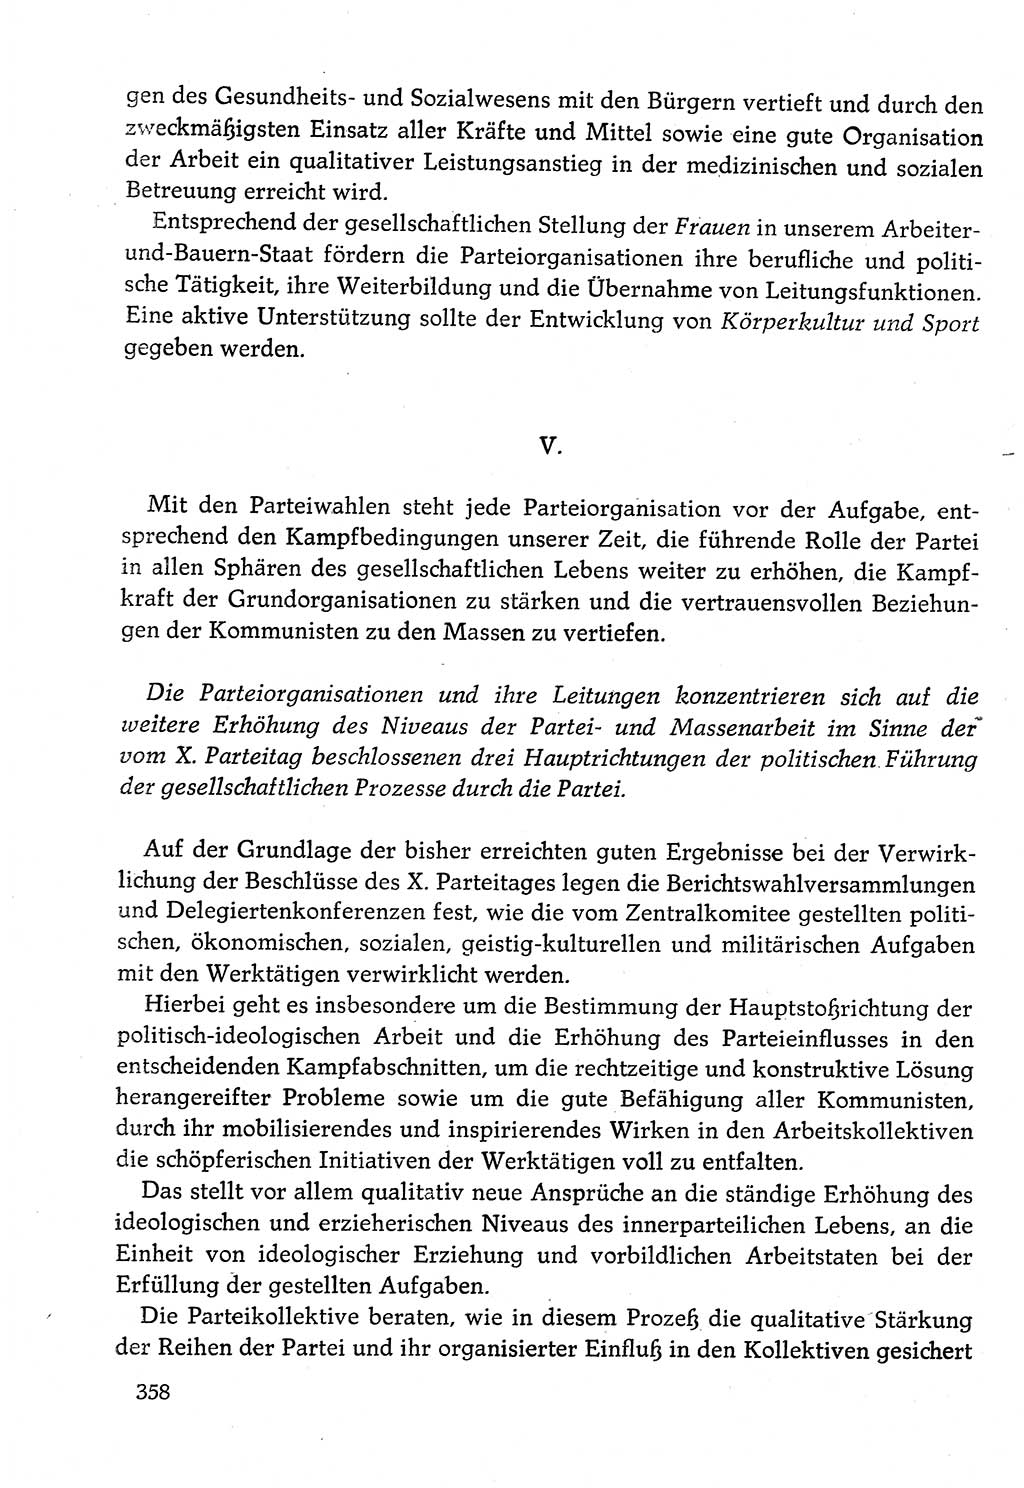 Dokumente der Sozialistischen Einheitspartei Deutschlands (SED) [Deutsche Demokratische Republik (DDR)] 1982-1983, Seite 358 (Dok. SED DDR 1982-1983, S. 358)